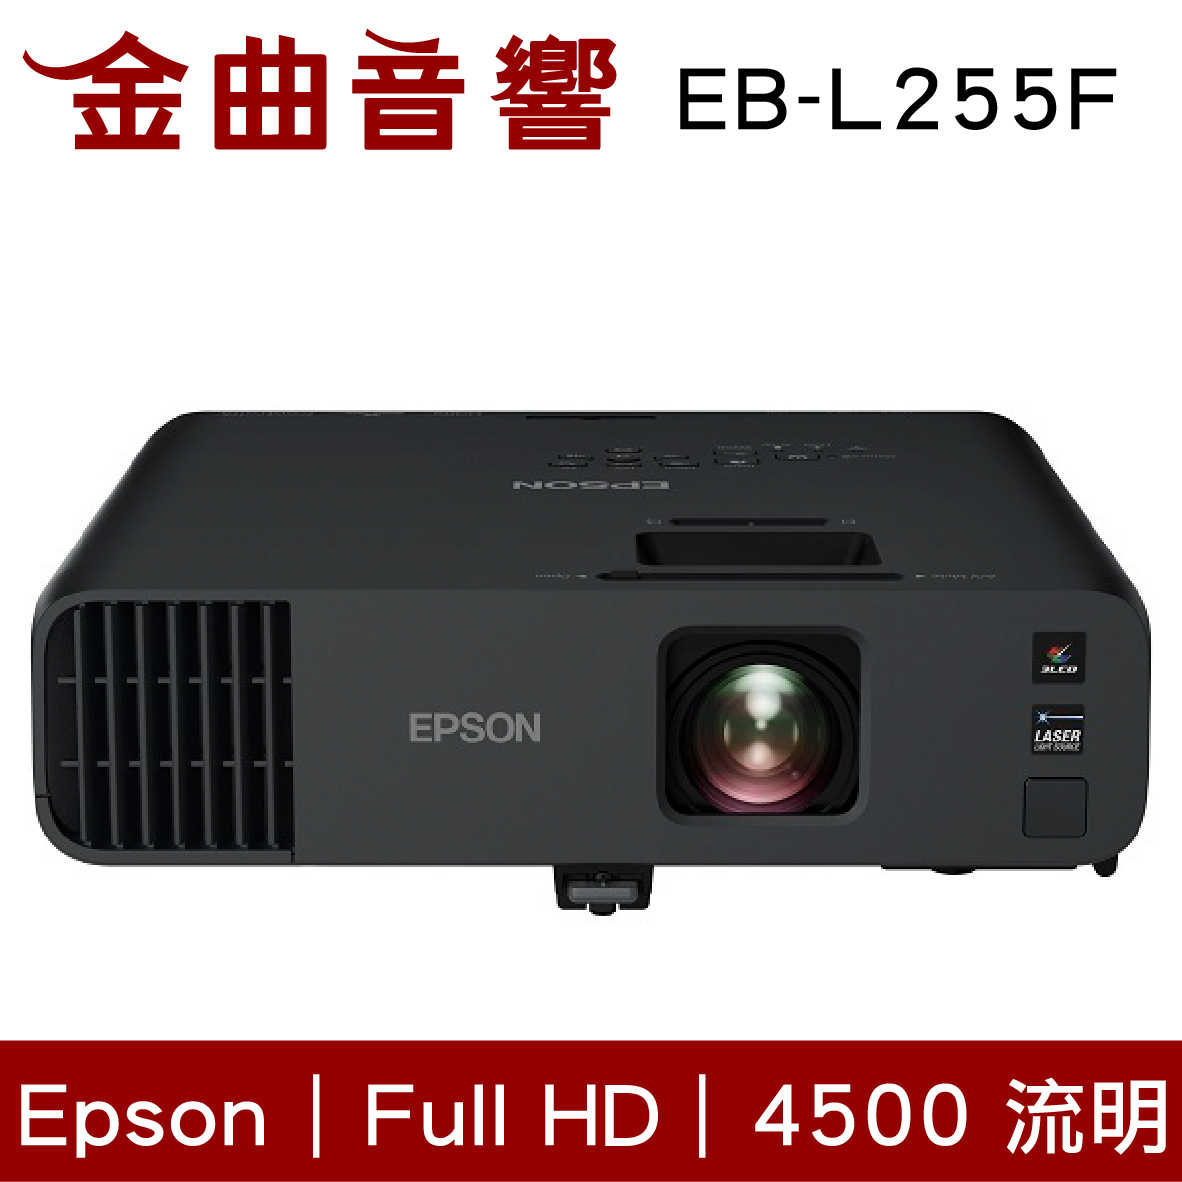 EPSON 愛普生 EB-L255F 4500流明 Full HD商務雷射投影機 | 金曲音響